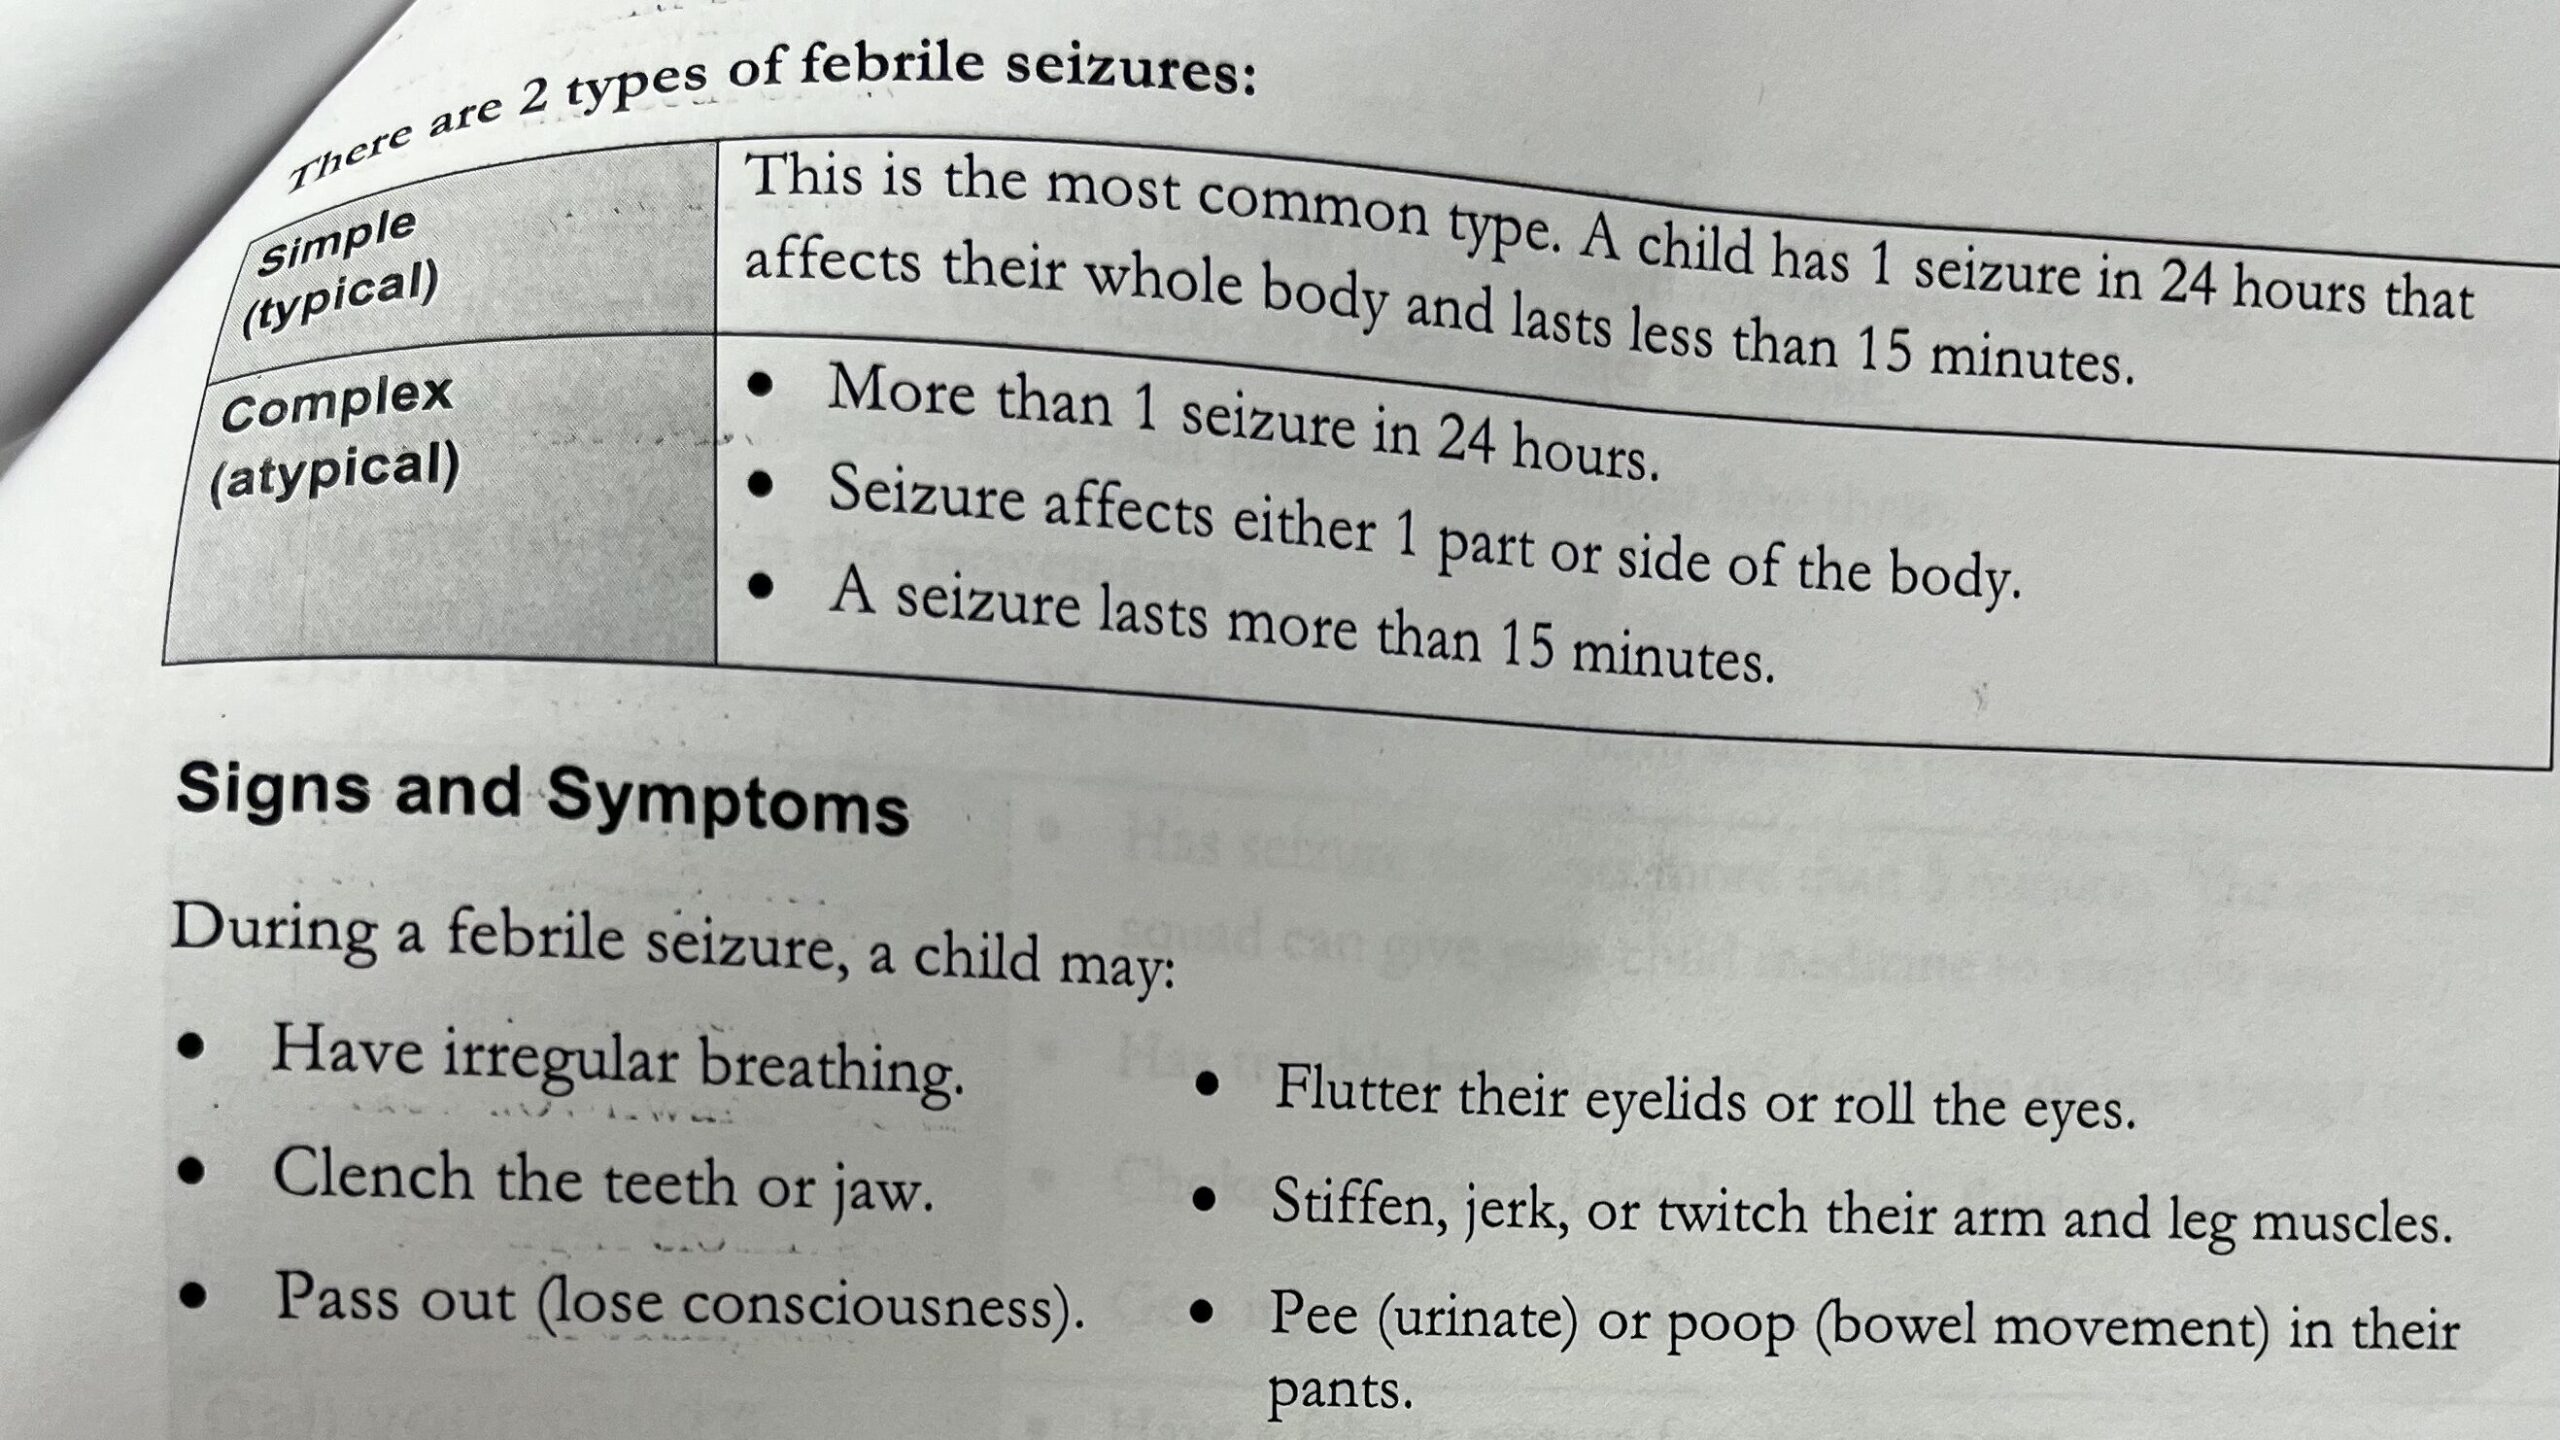 熱性けいれんの症状についての説明文書を撮影した写真